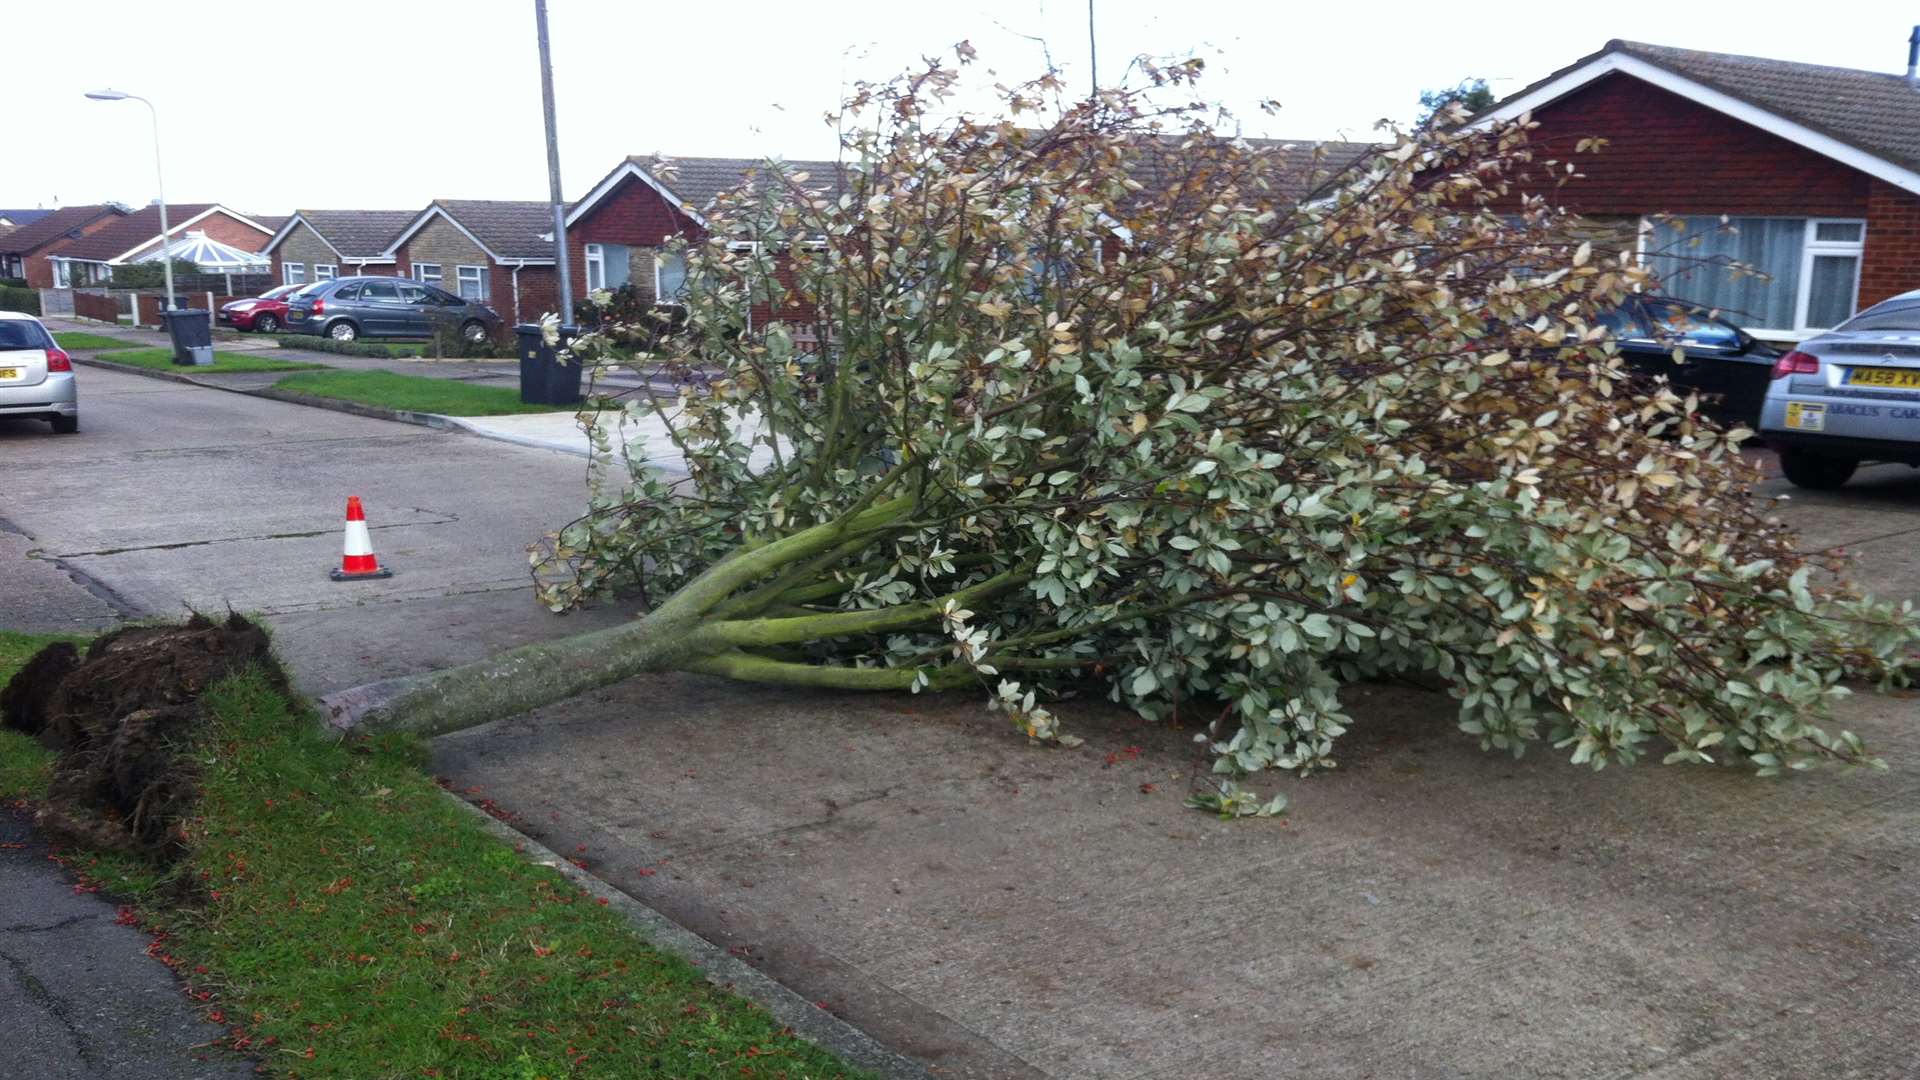 Fallen tree in Meteor Avenue, Whitstable